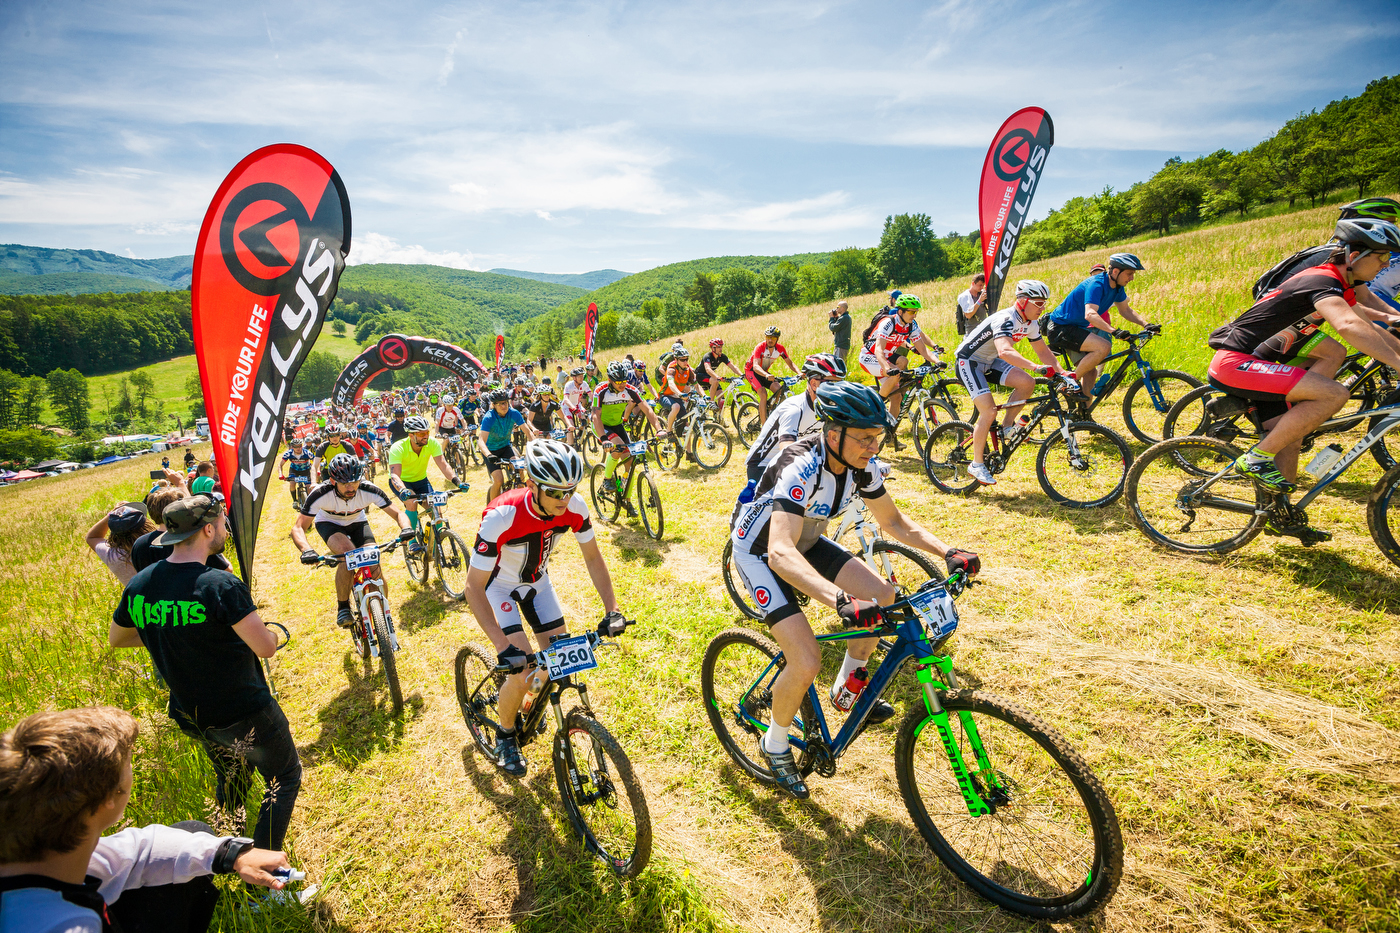 Blíži sa najväčší bicyklový festival na Slovensku Birrel BikeFest 2016